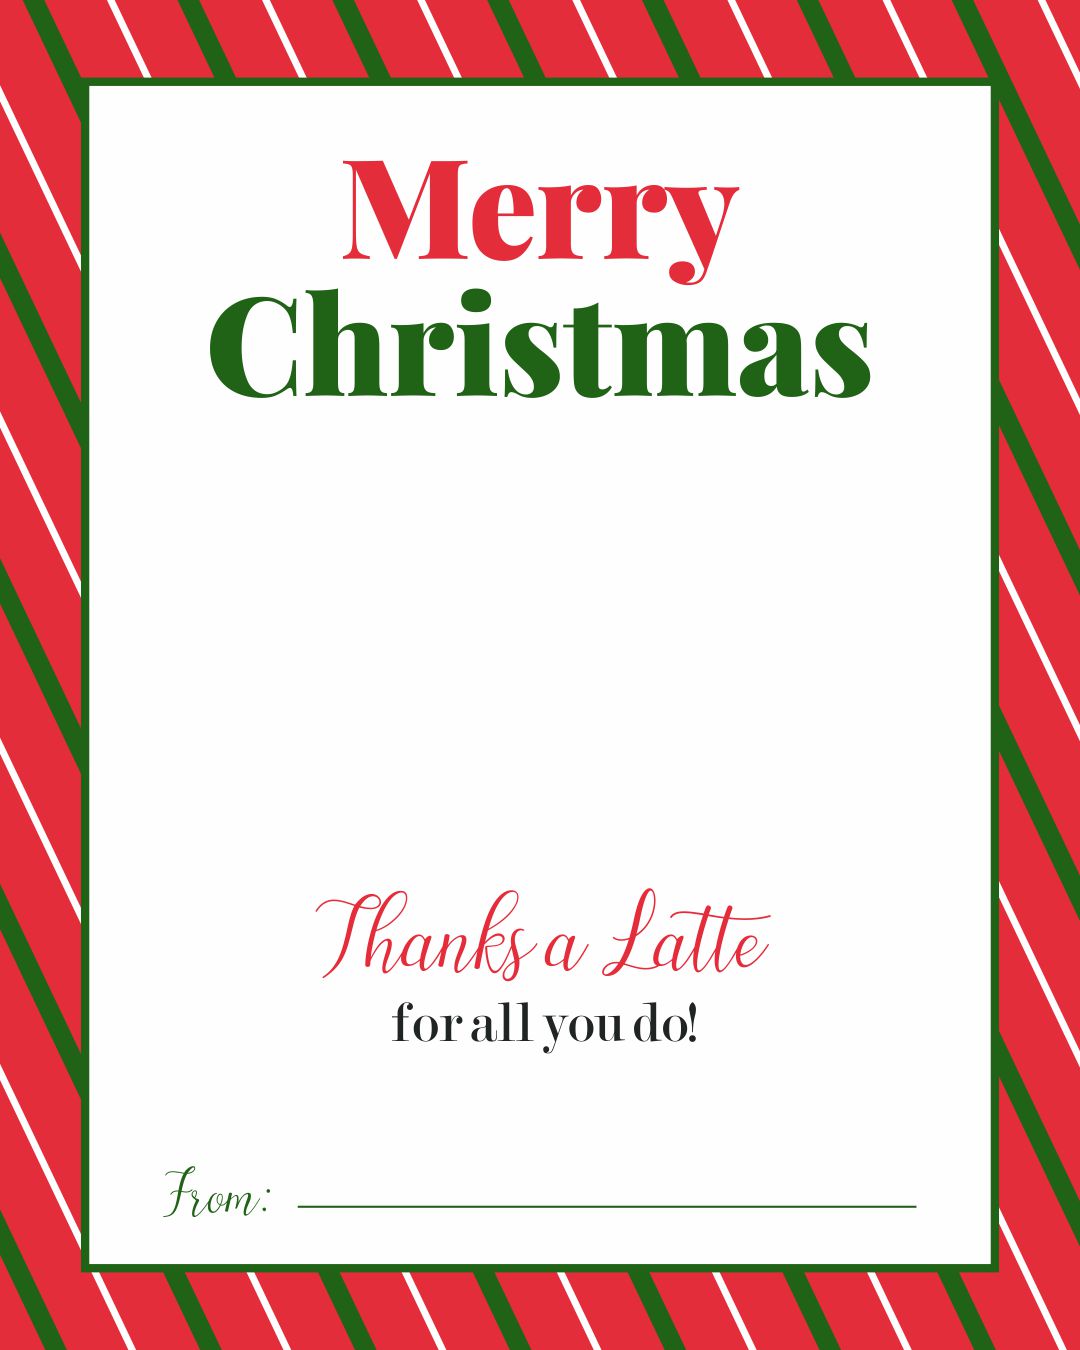 Thanks a Latte Printable Christmas